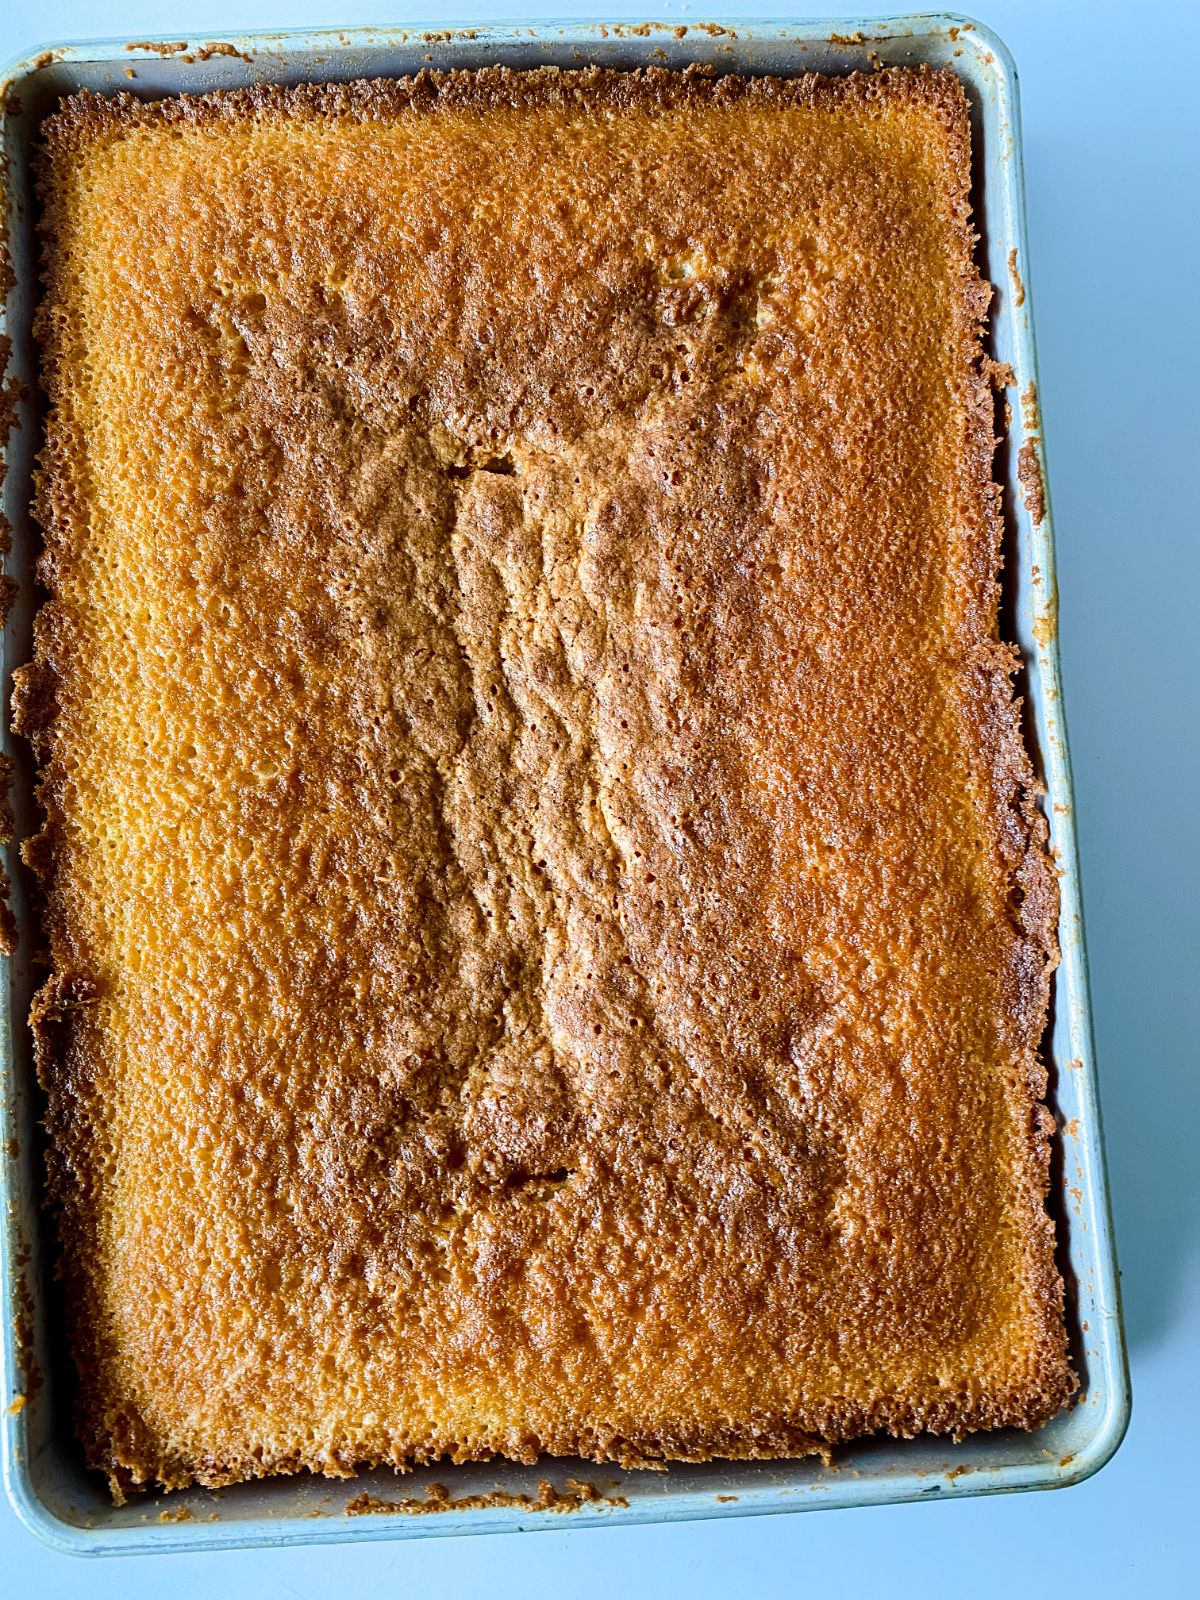 cooked sheet cake in pan